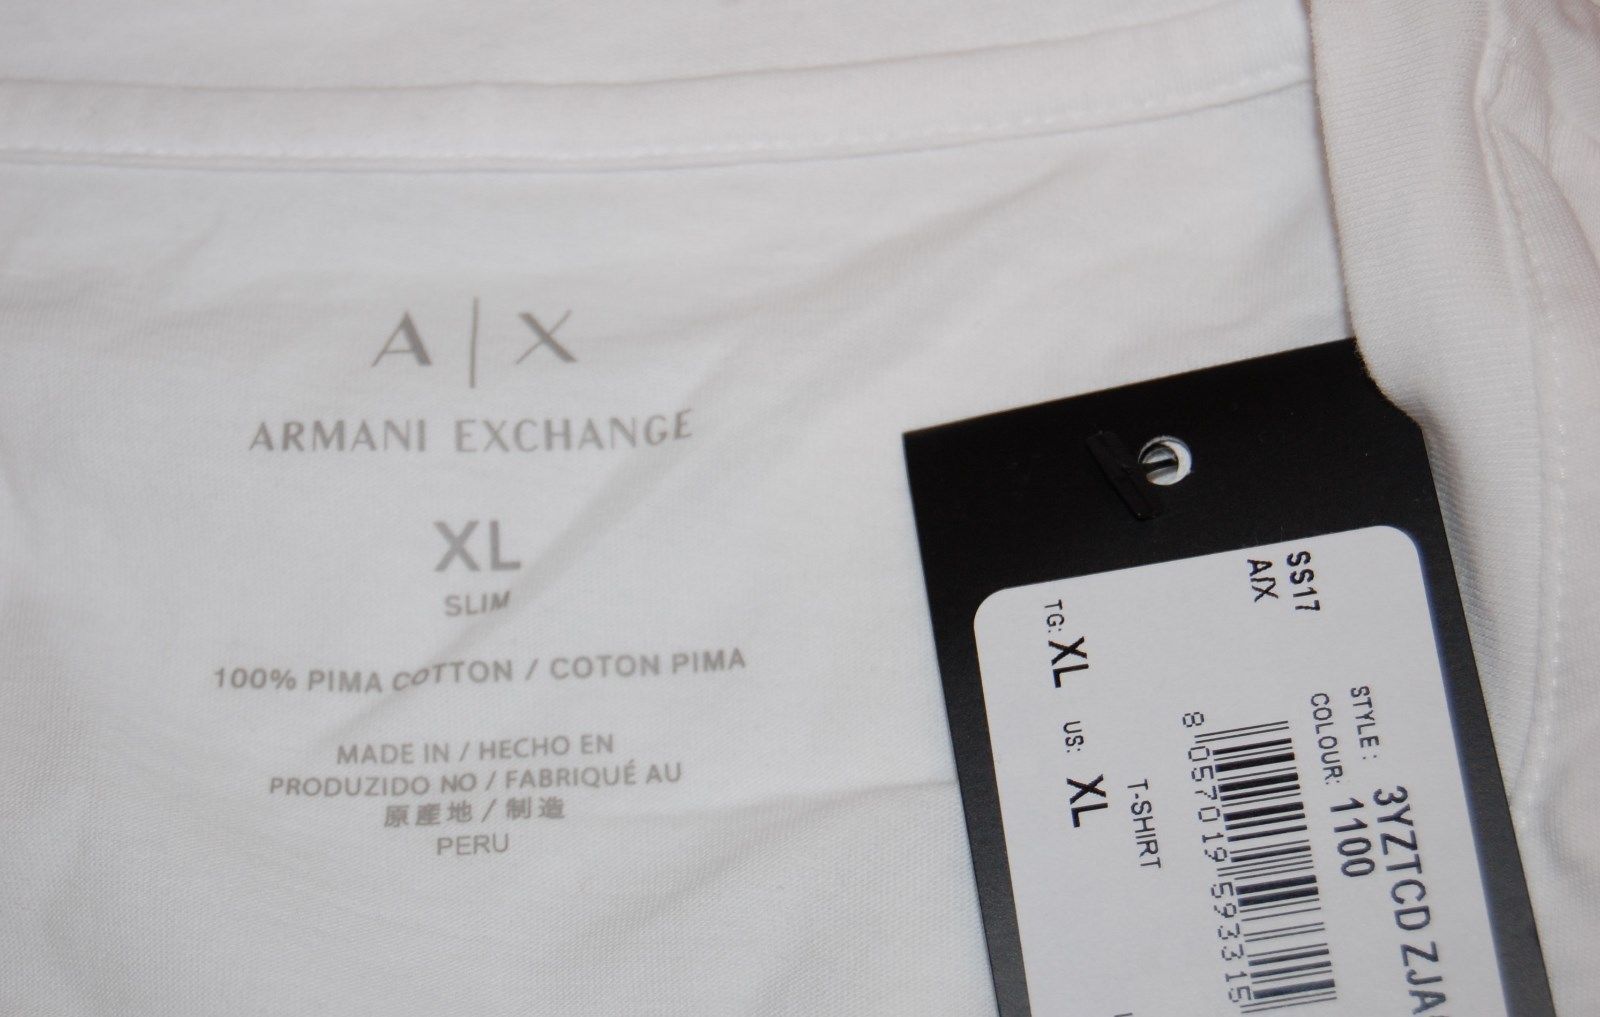 armani exchange t shirt made in peru